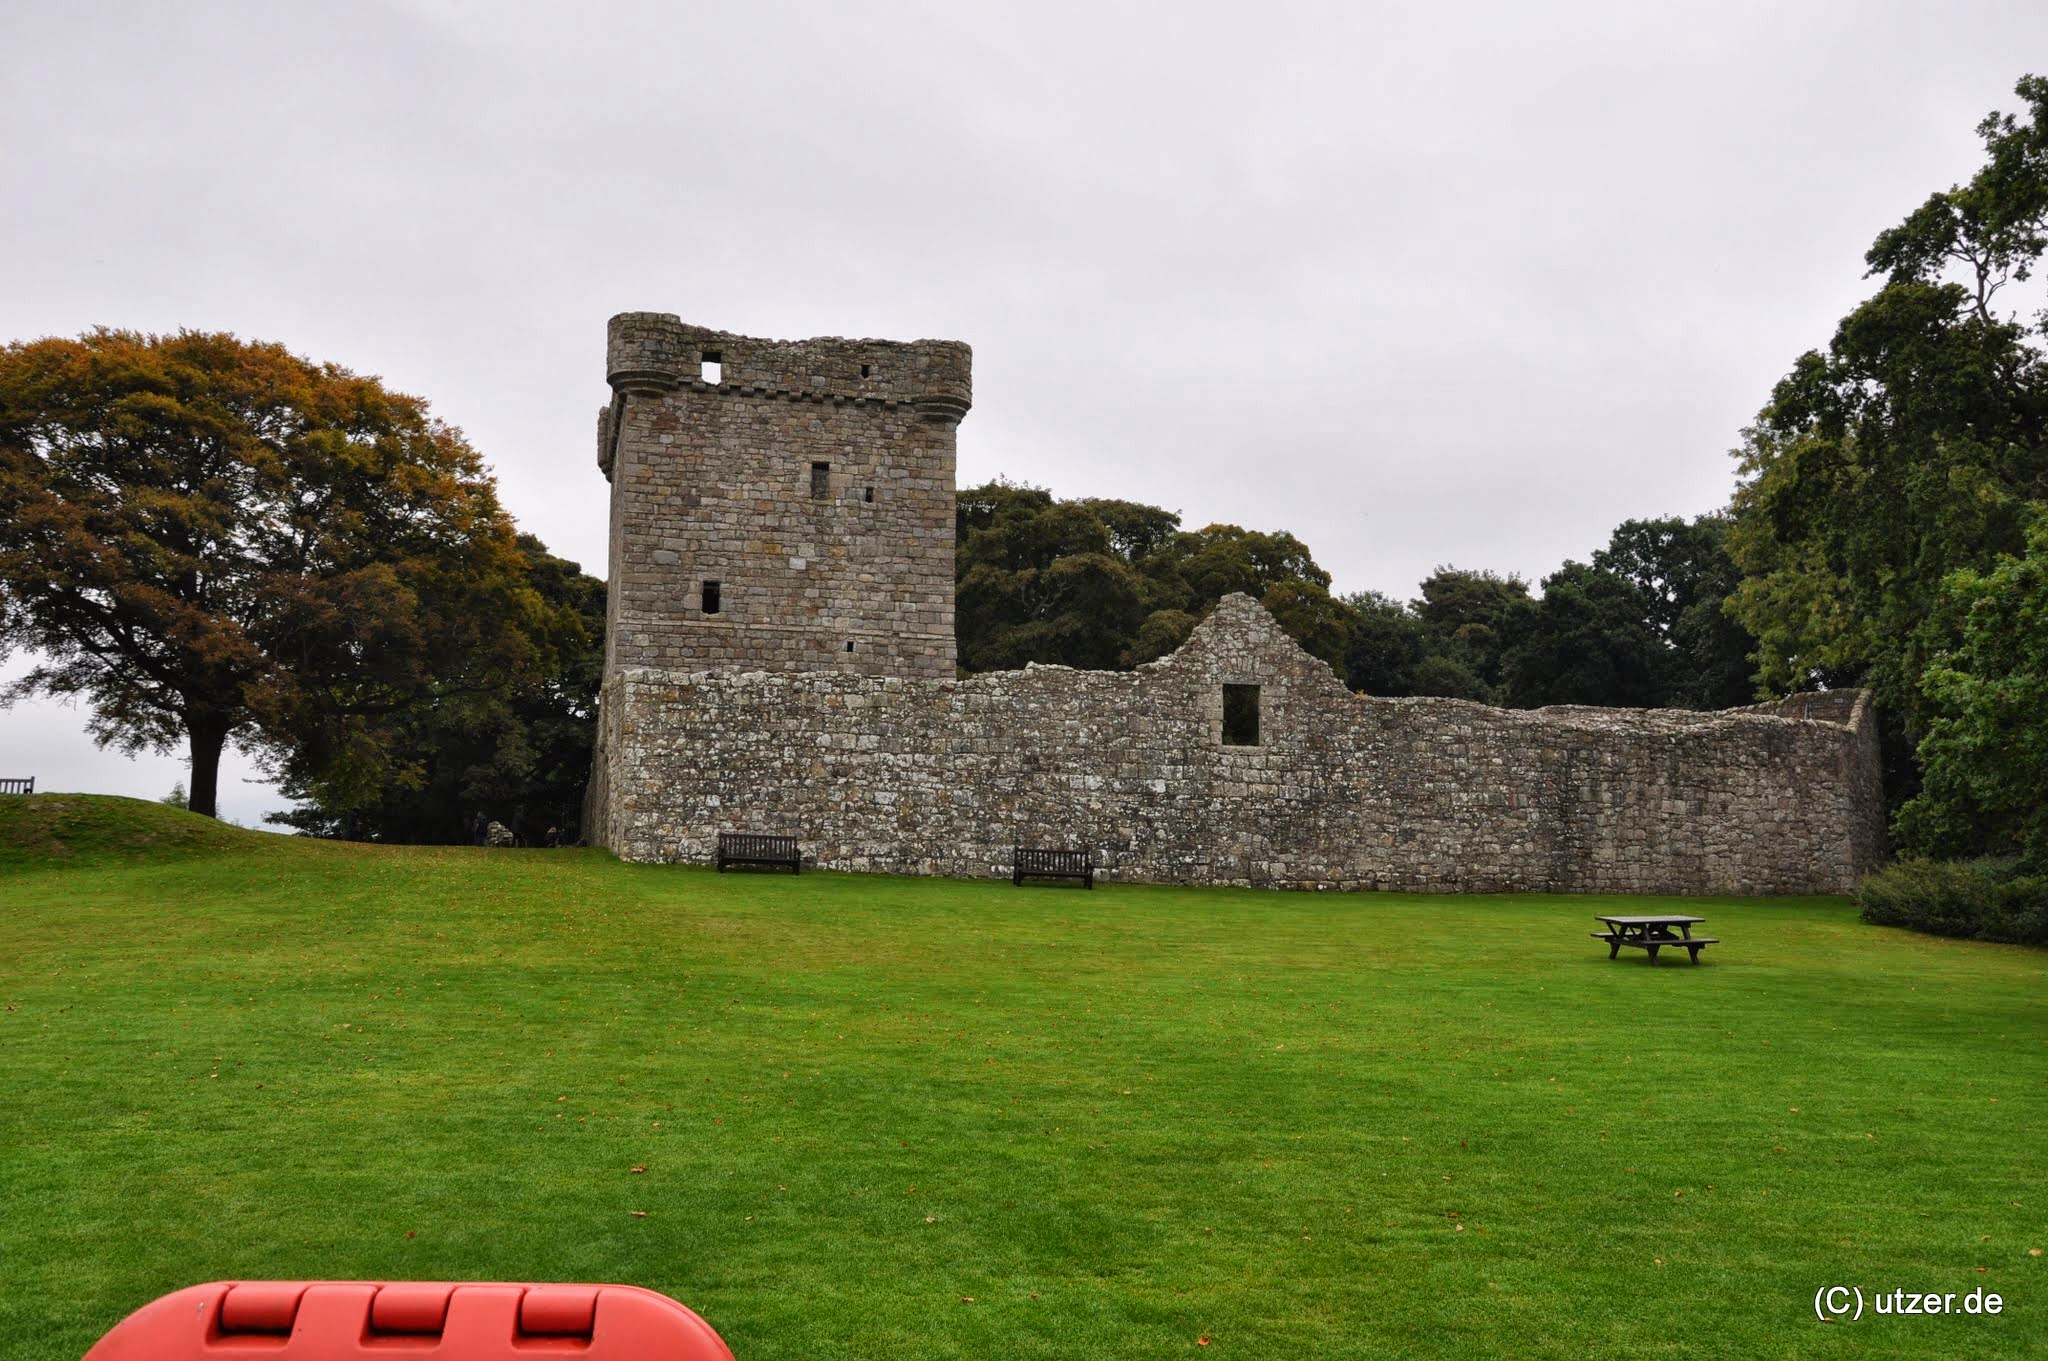 Und noch ein Schloss, Lochleven Castle, auf einer Insel gelegen in Loch Leven. Wichtig ist das Schloss weil hier Maria Stuart "zu Gast" war. http://de.wikipedia.org/wiki/Loch_Leven_Castle